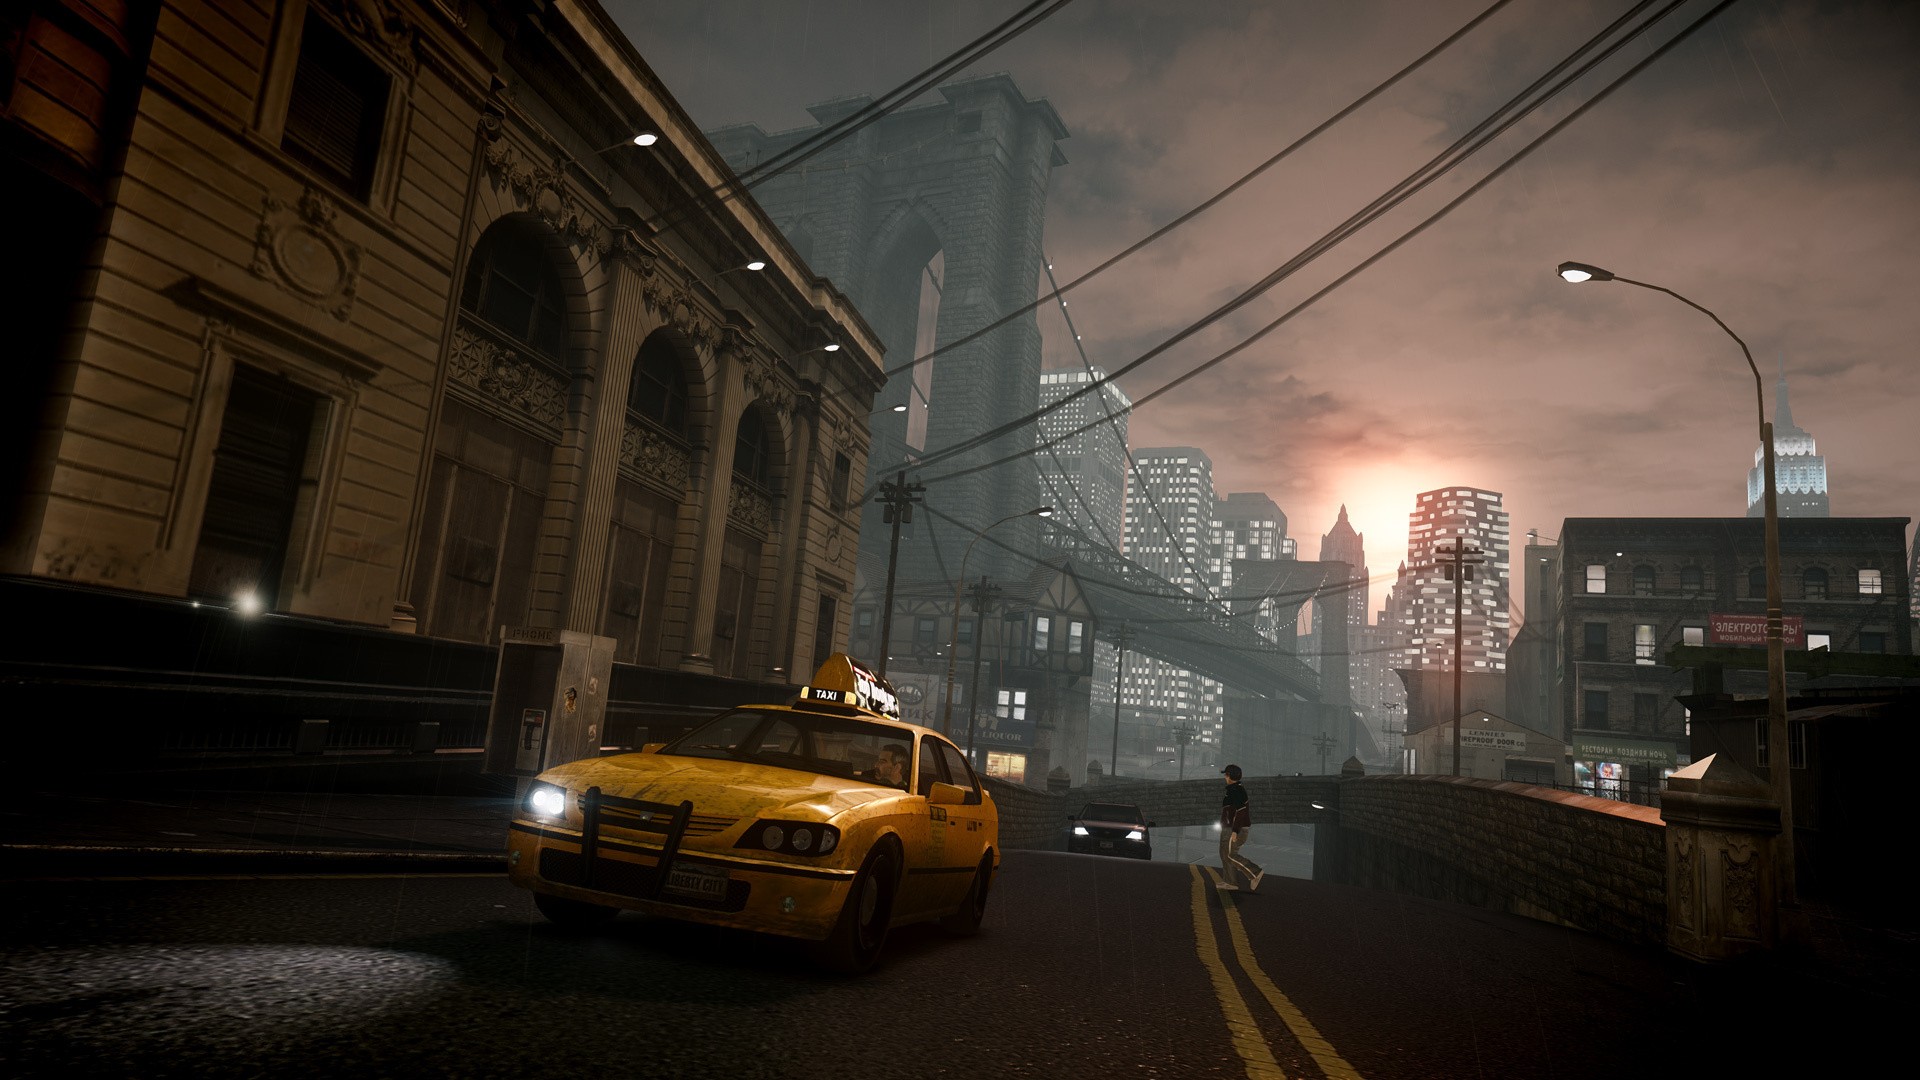 VÍDEO: GTA 4 Retrocompatibilidade - Gameplay Viaje Grátis para Nova Iorque  - Engeplus Notícias